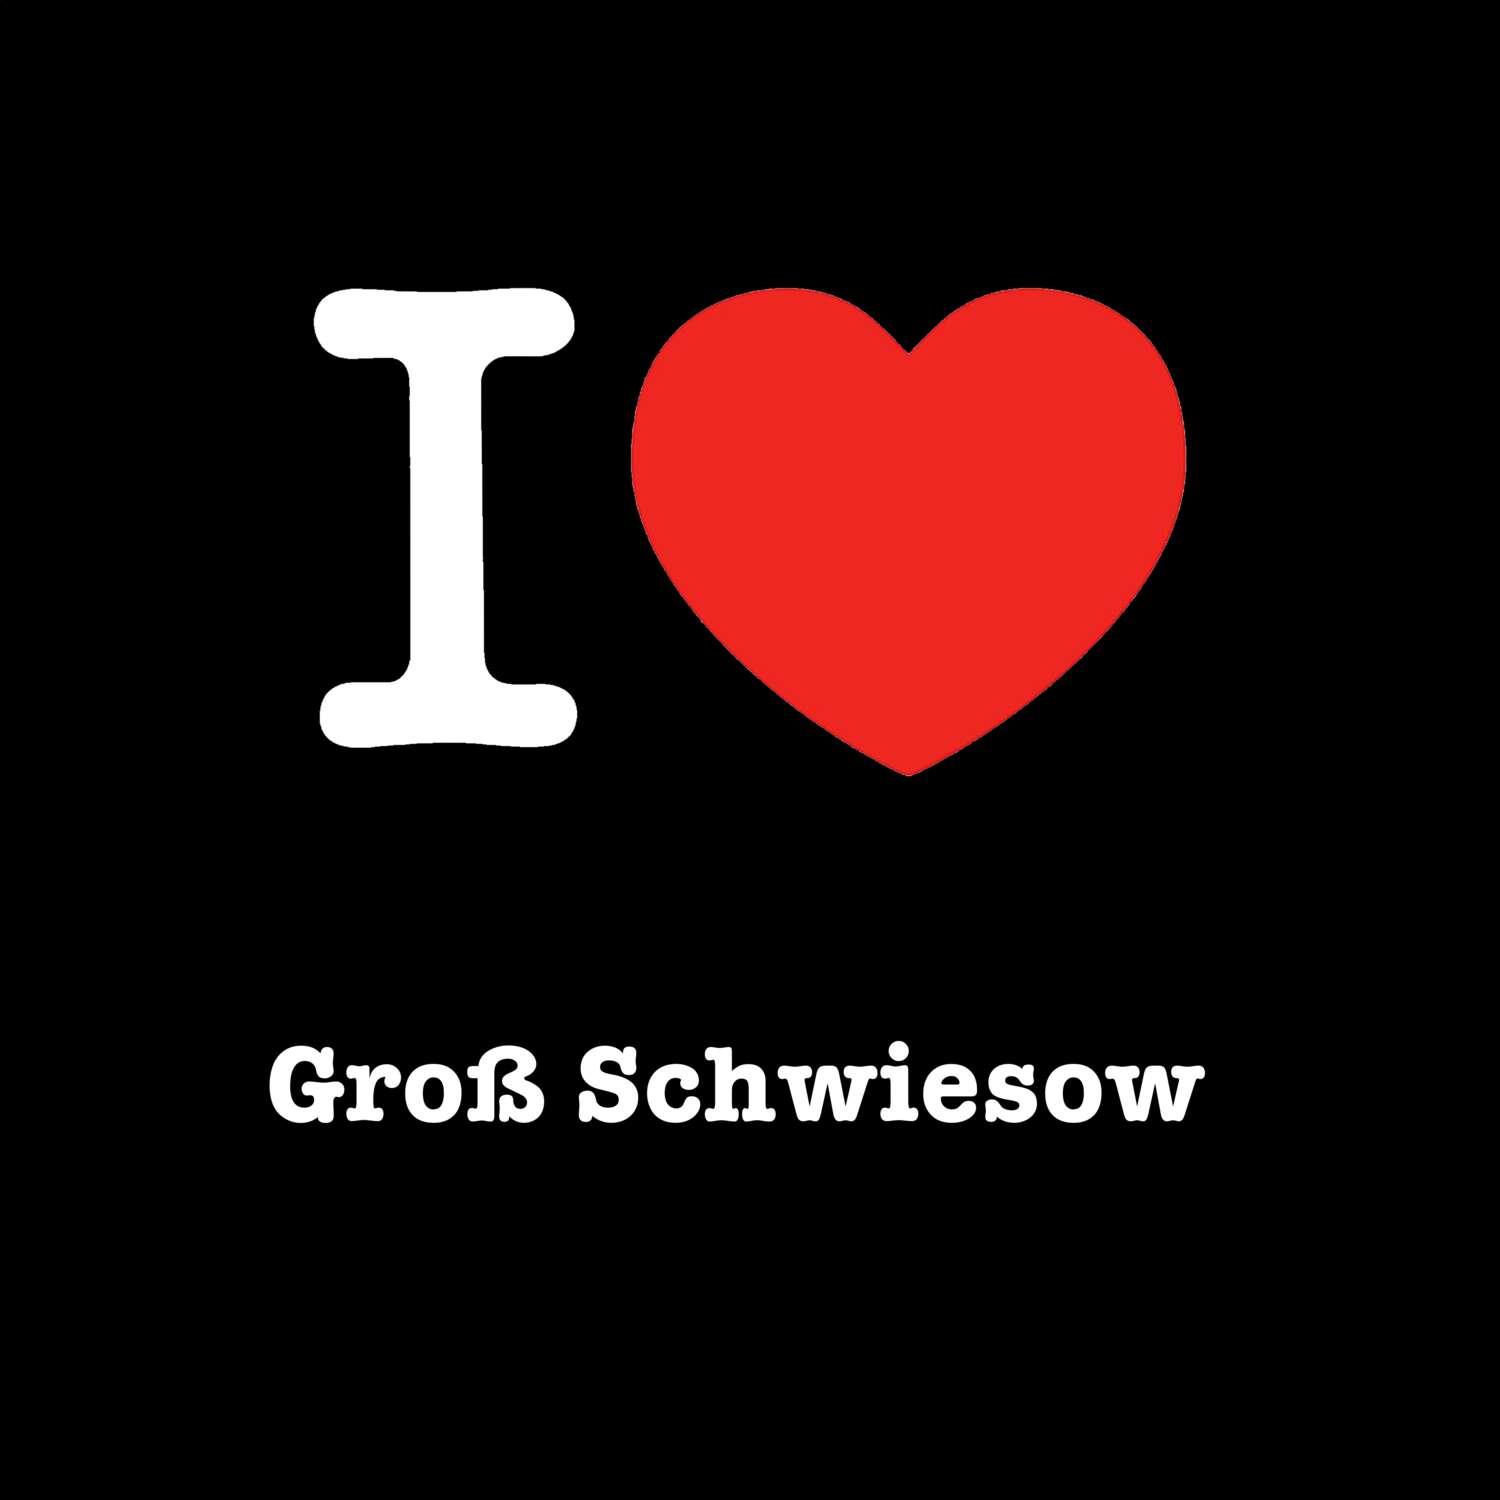 Groß Schwiesow T-Shirt »I love«